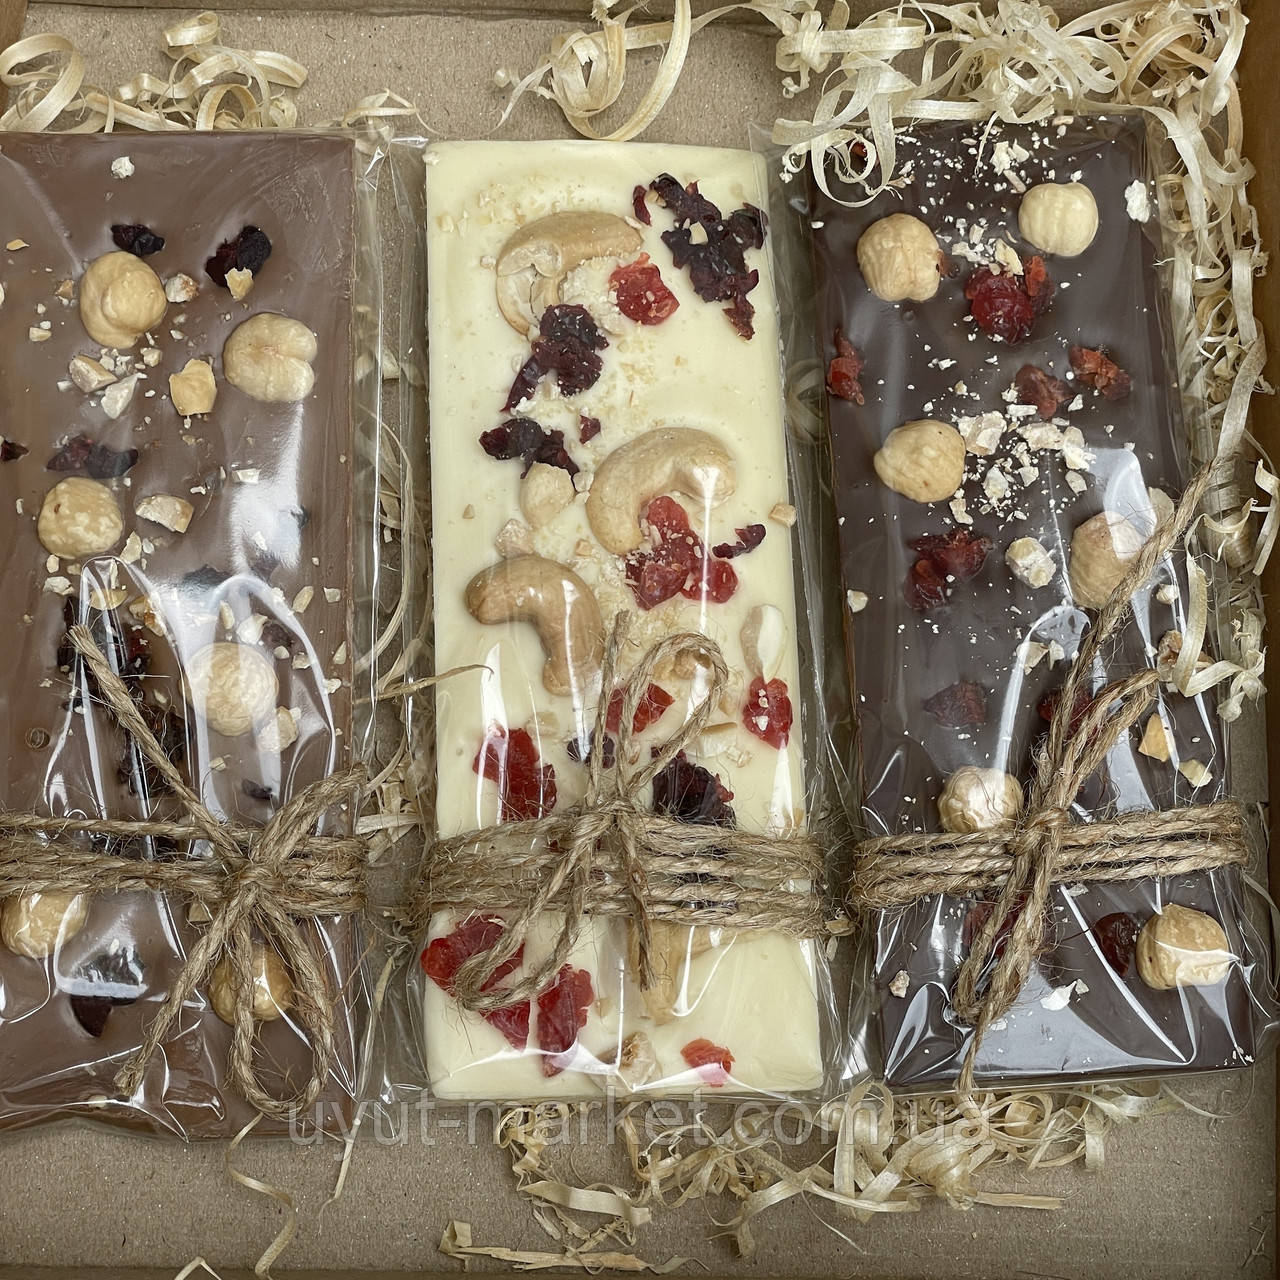 Набір крафтовий натуральний шоколад 3шт MIX  (білий, молочний, чорний)  з горішками, ягодами, пелюстками троянди